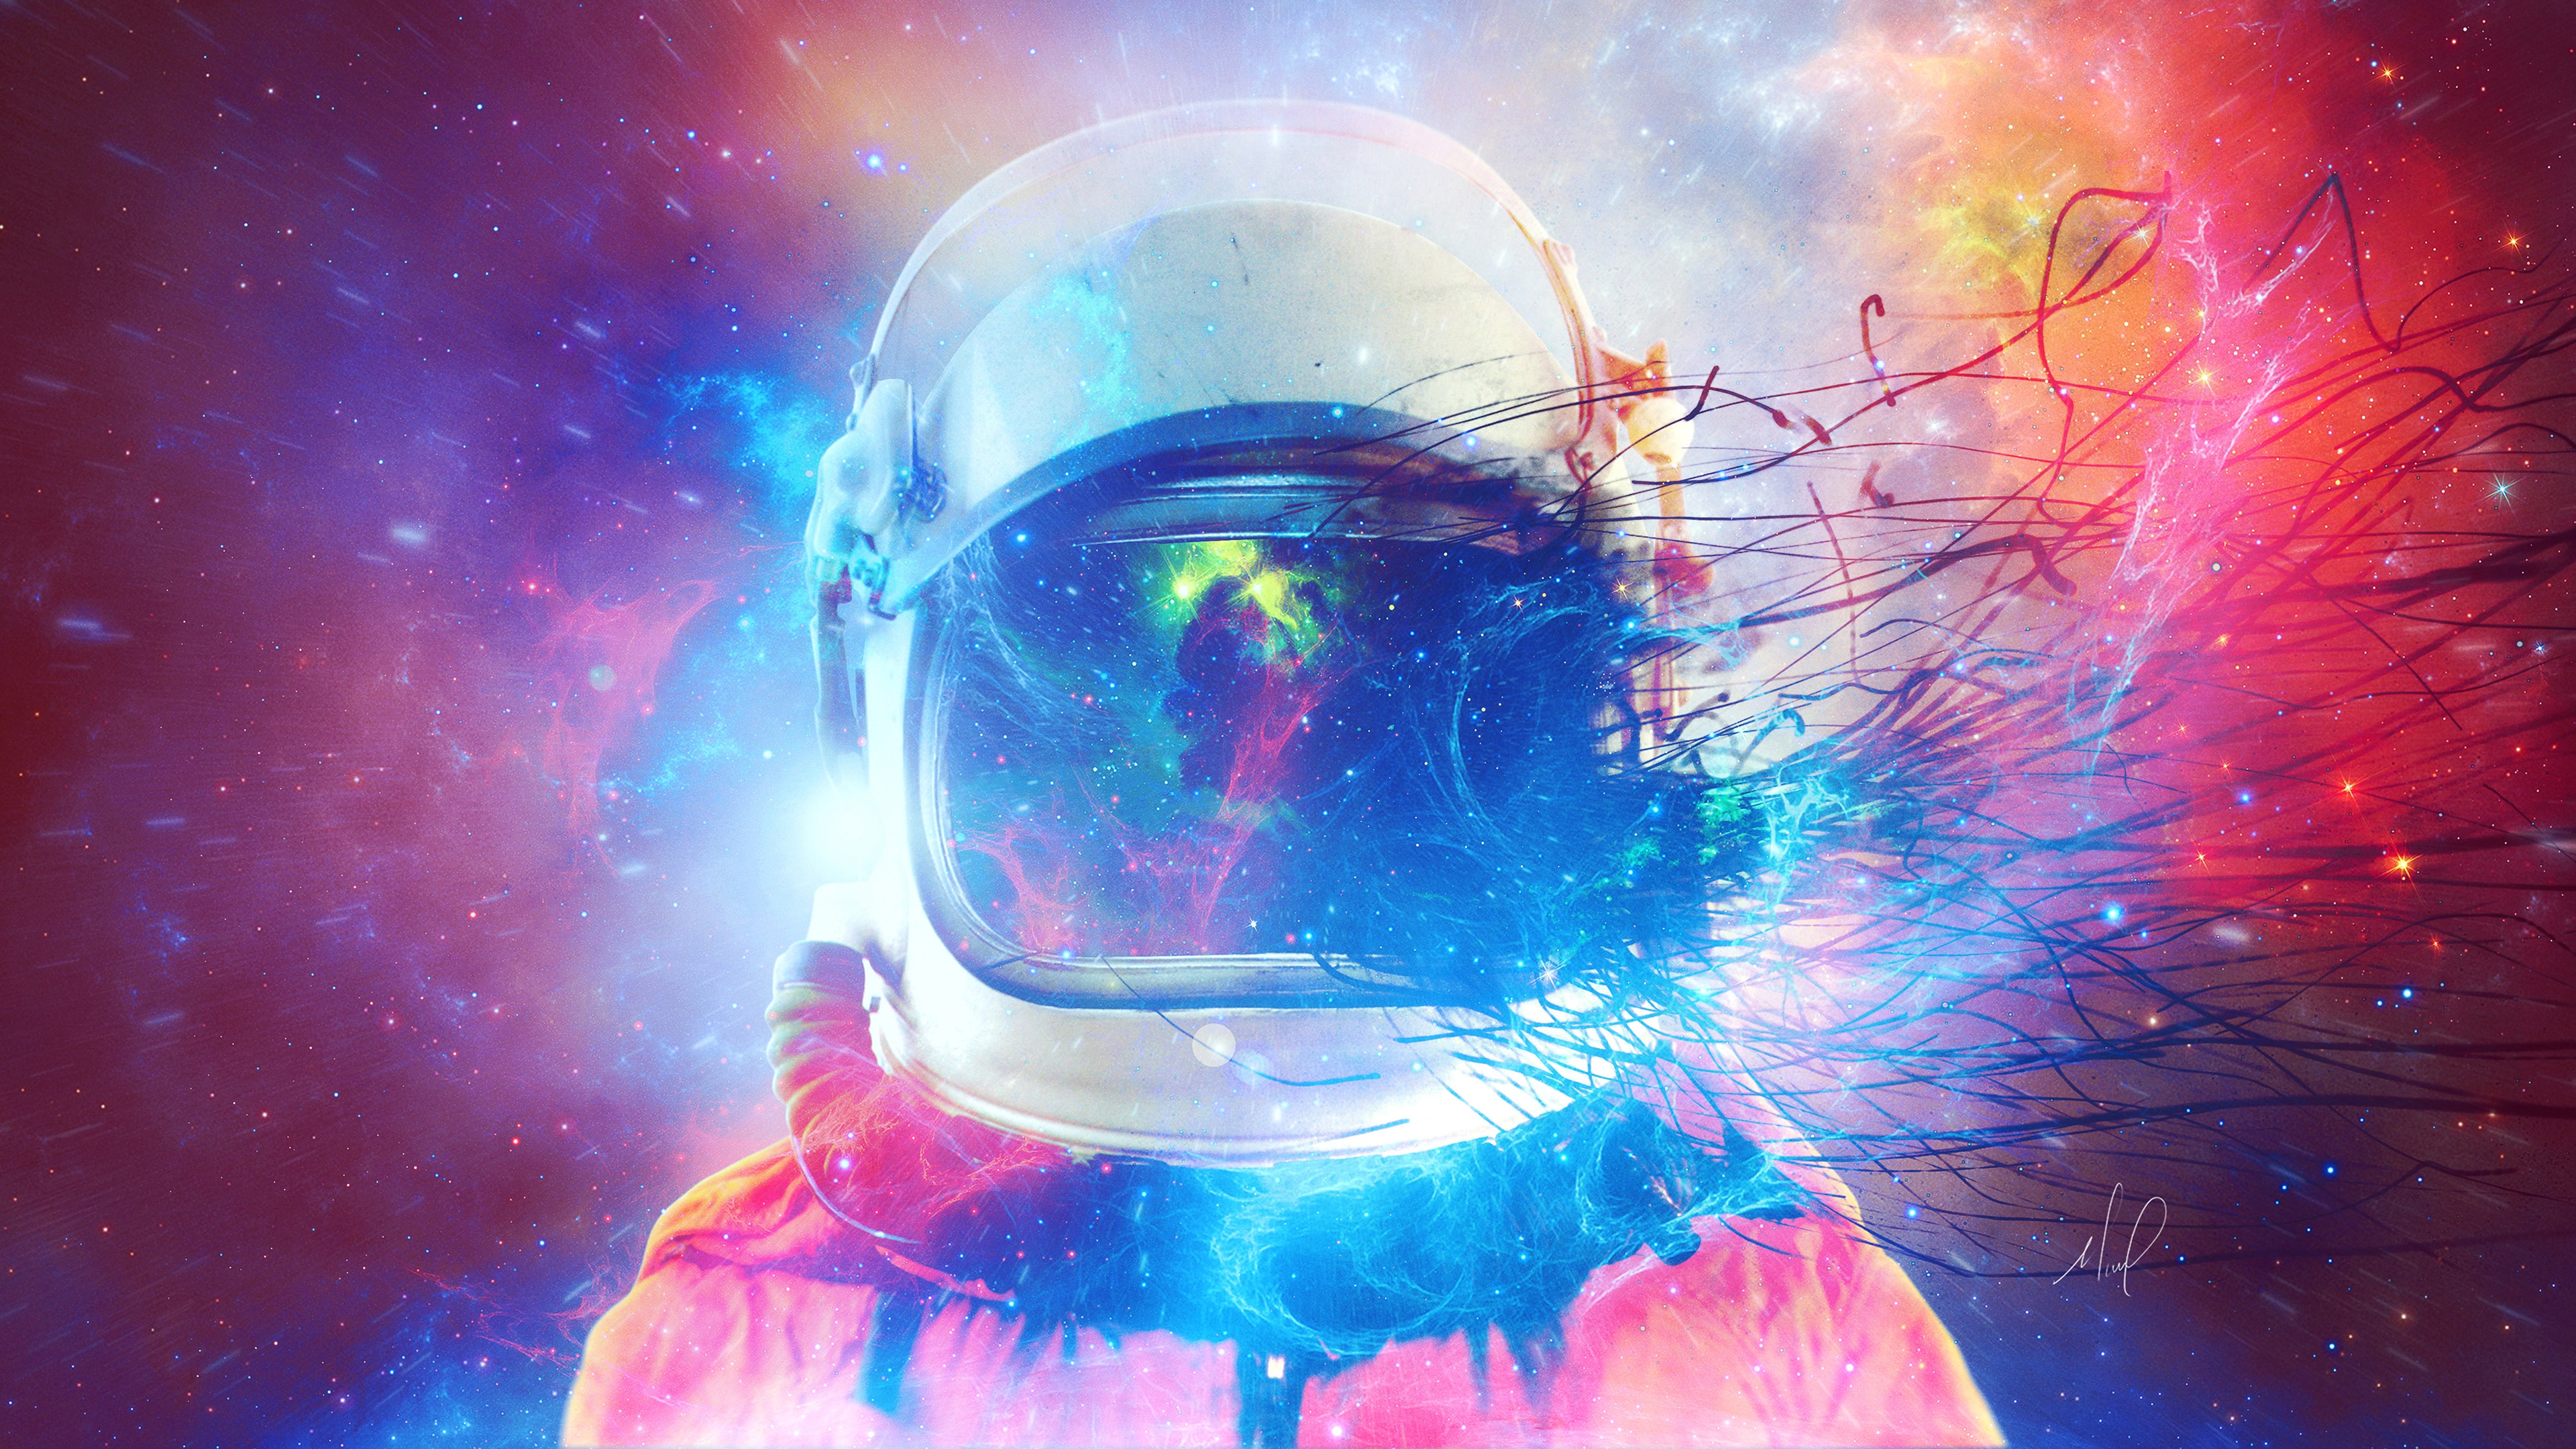 Astronaut, Space, Stars, Digital Art - Astronaut Wallpaper 4k - HD Wallpaper 